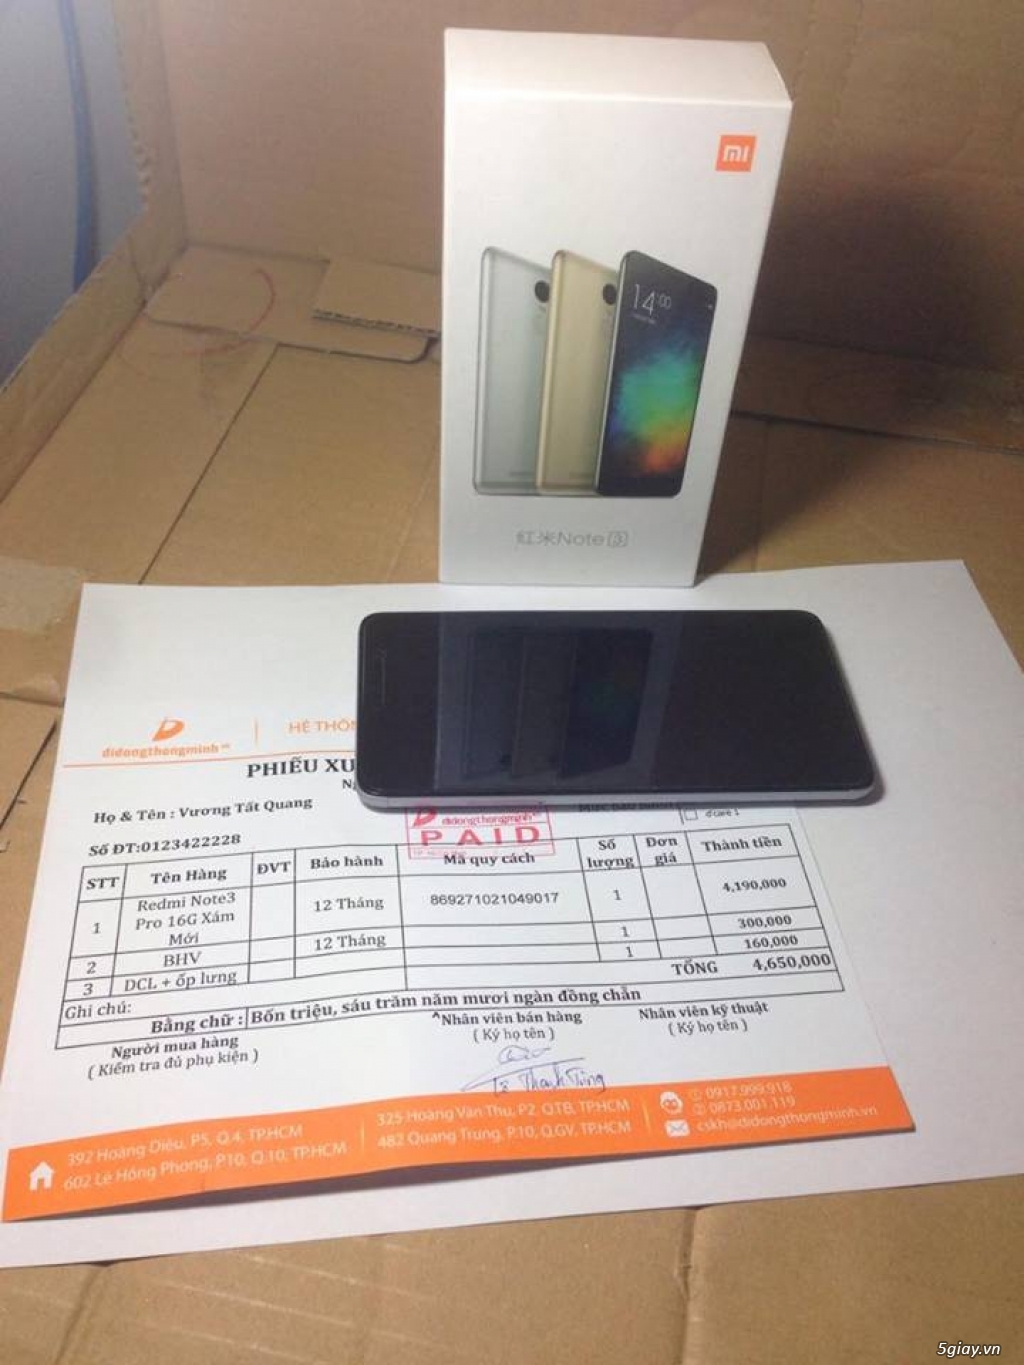 XIAOMI Redmi Note 3 Pro 16G Xám mới 99,99% ra đi siêu nhanh - 1